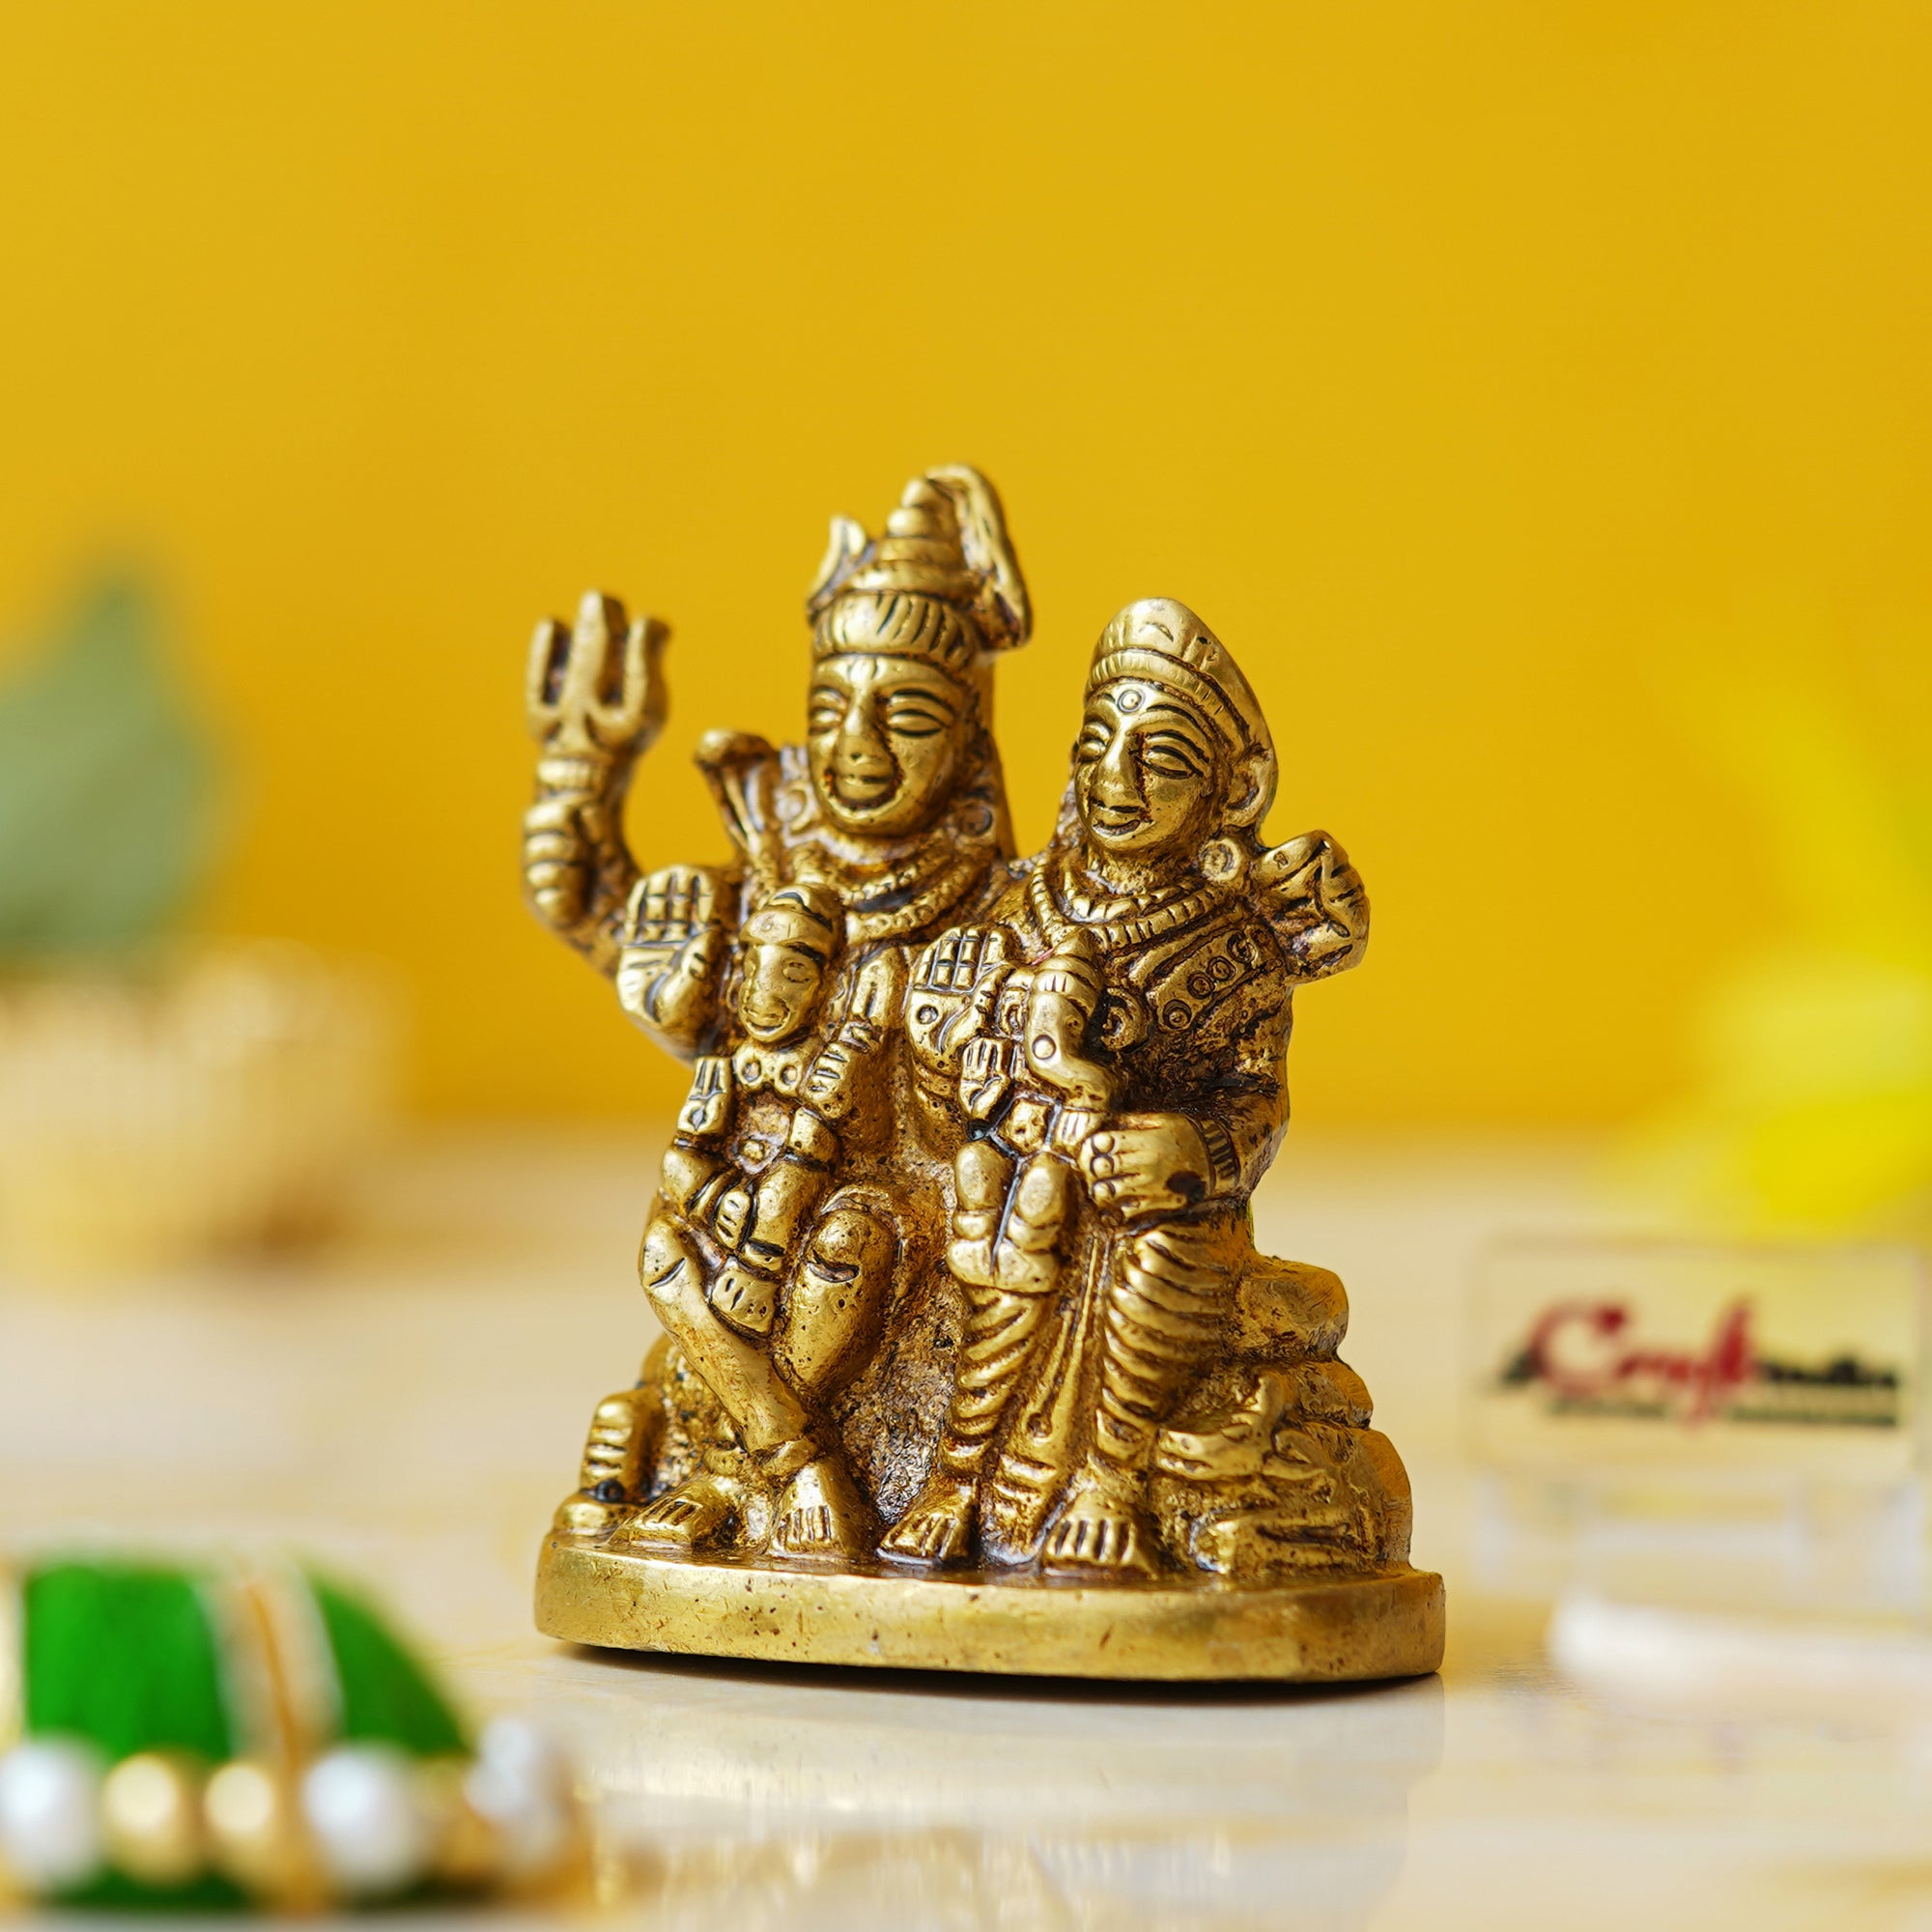 Golden Brass Shiv Parivar Murti Idol - Lord Shiva, Parvati, Ganesha, Kartikeya Statue for Home Temple, Car Dashboard 1